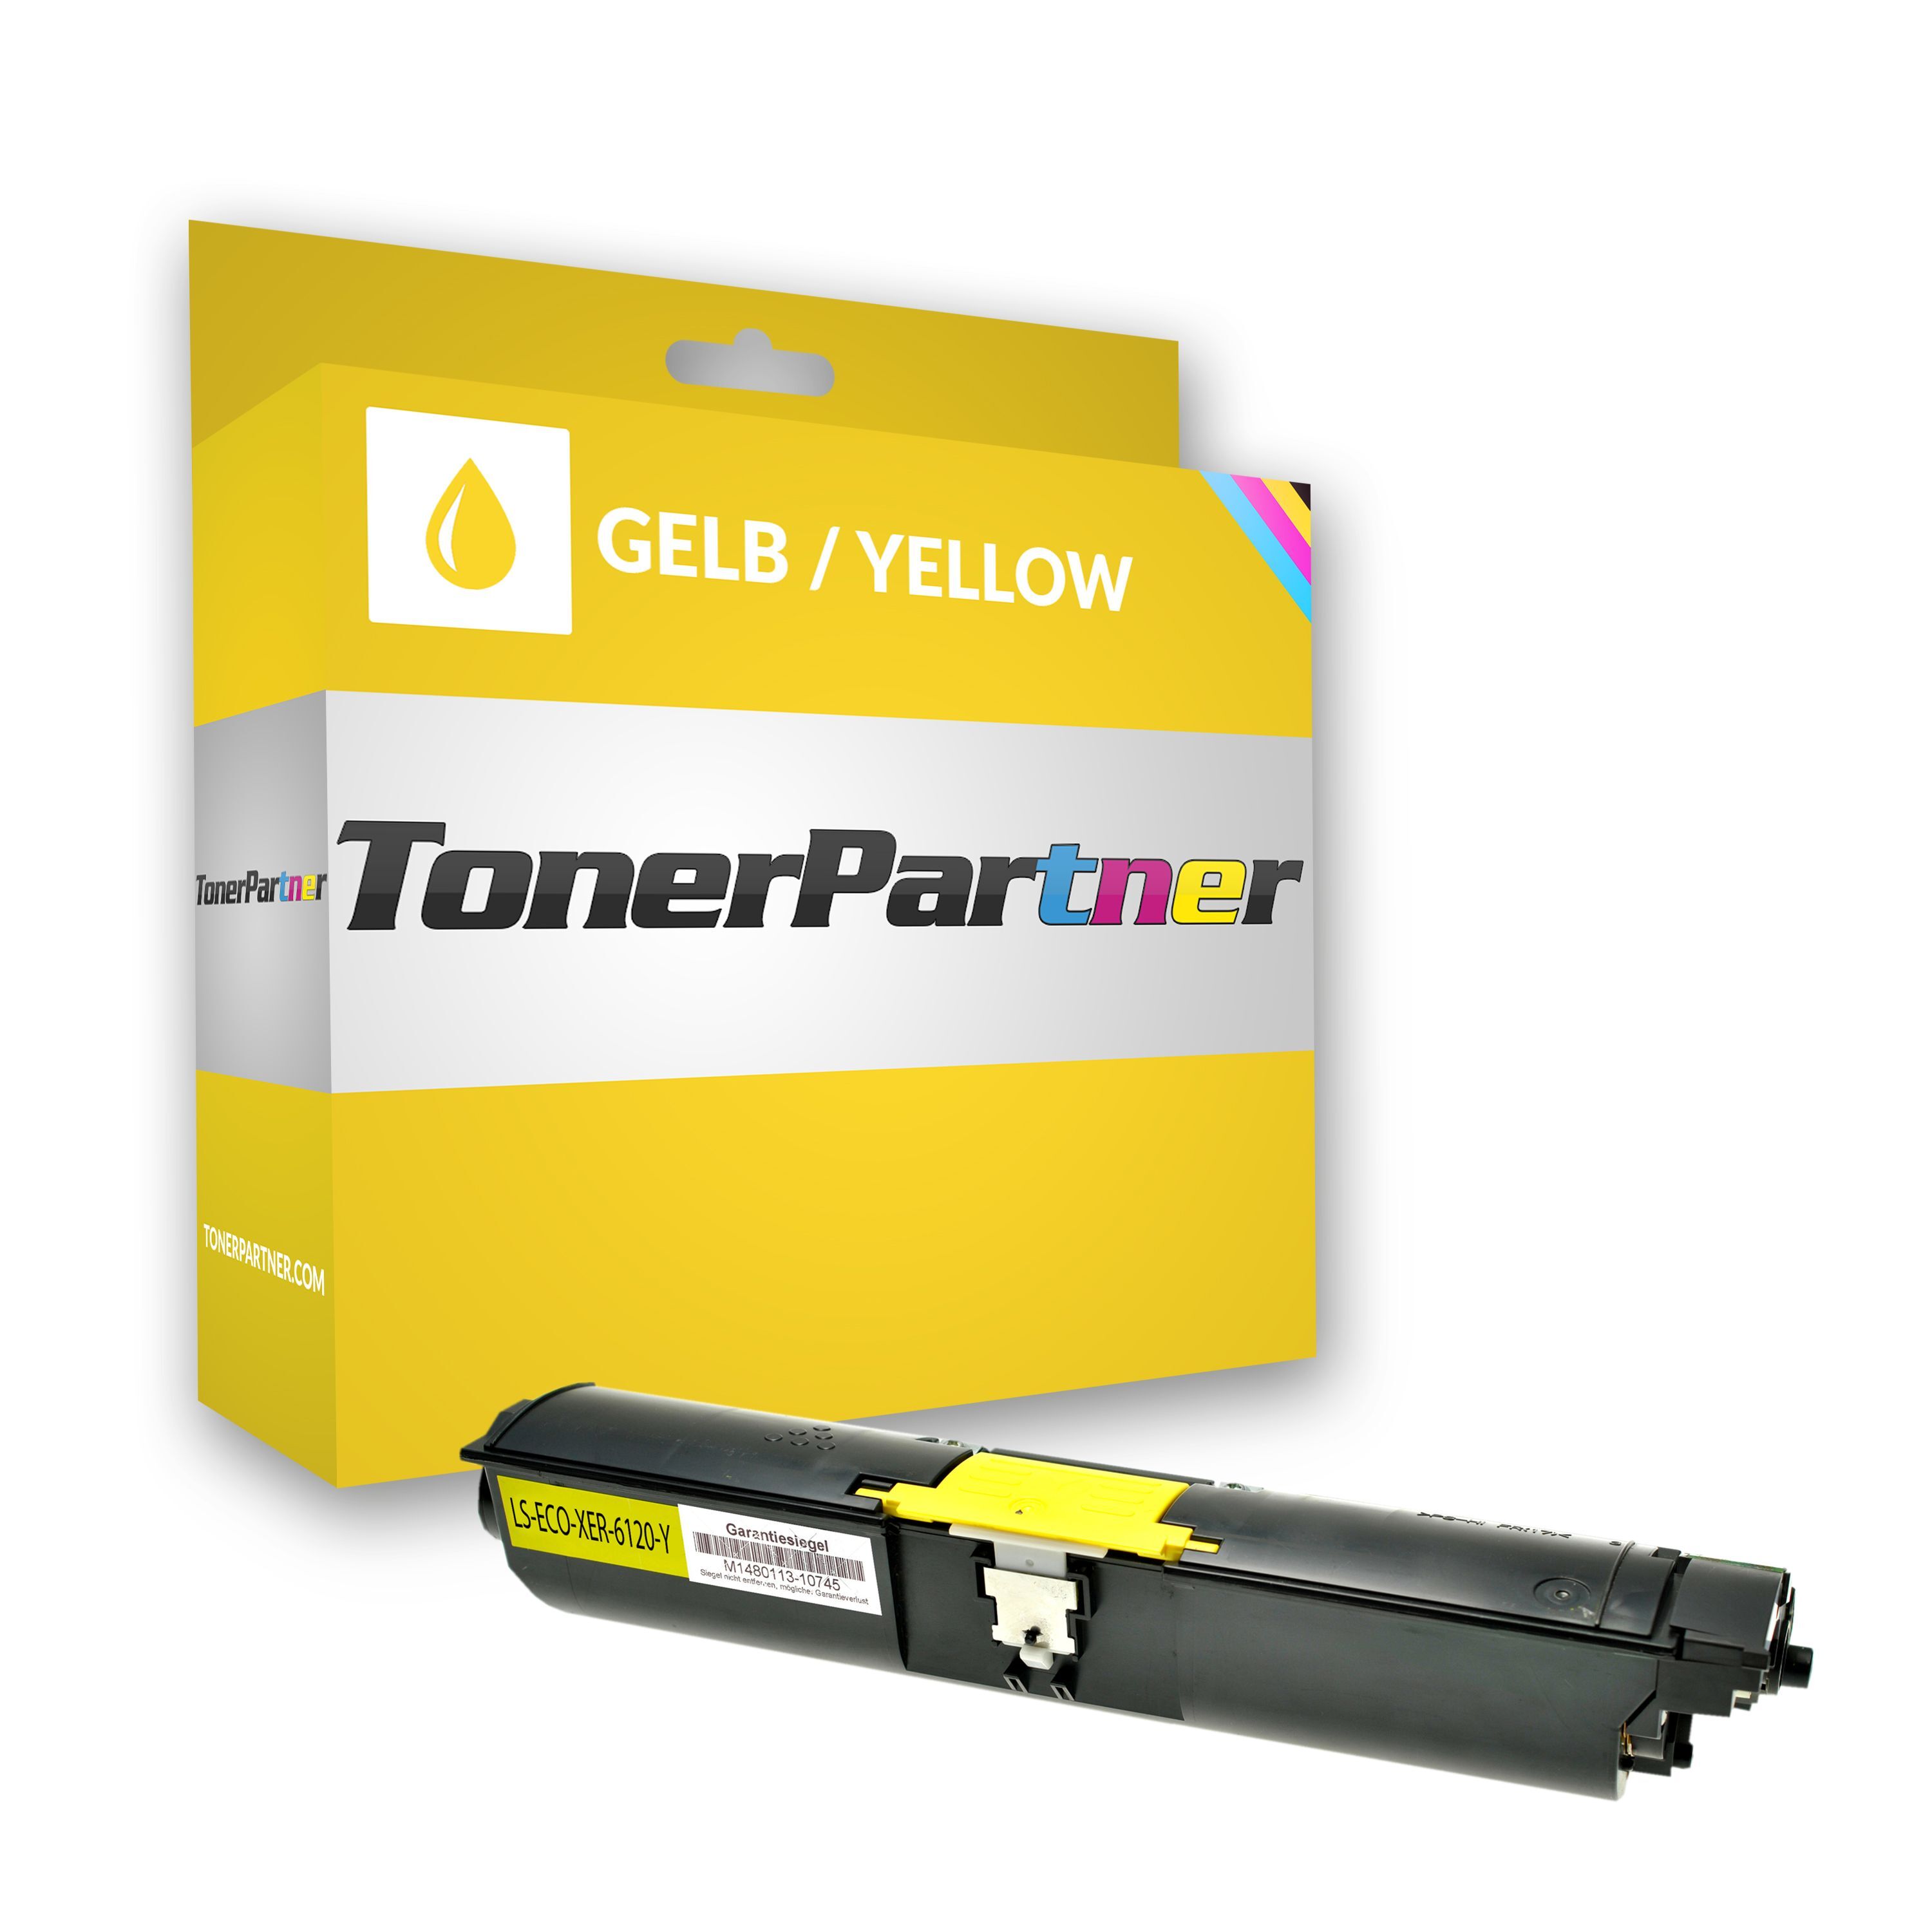 TonerPartner Kompatibel zu Xerox Phaser 6120 V N Toner (113 R 00694) gelb, 4.500 Seiten, 1,91 Rp pro Seite von TonerPartner